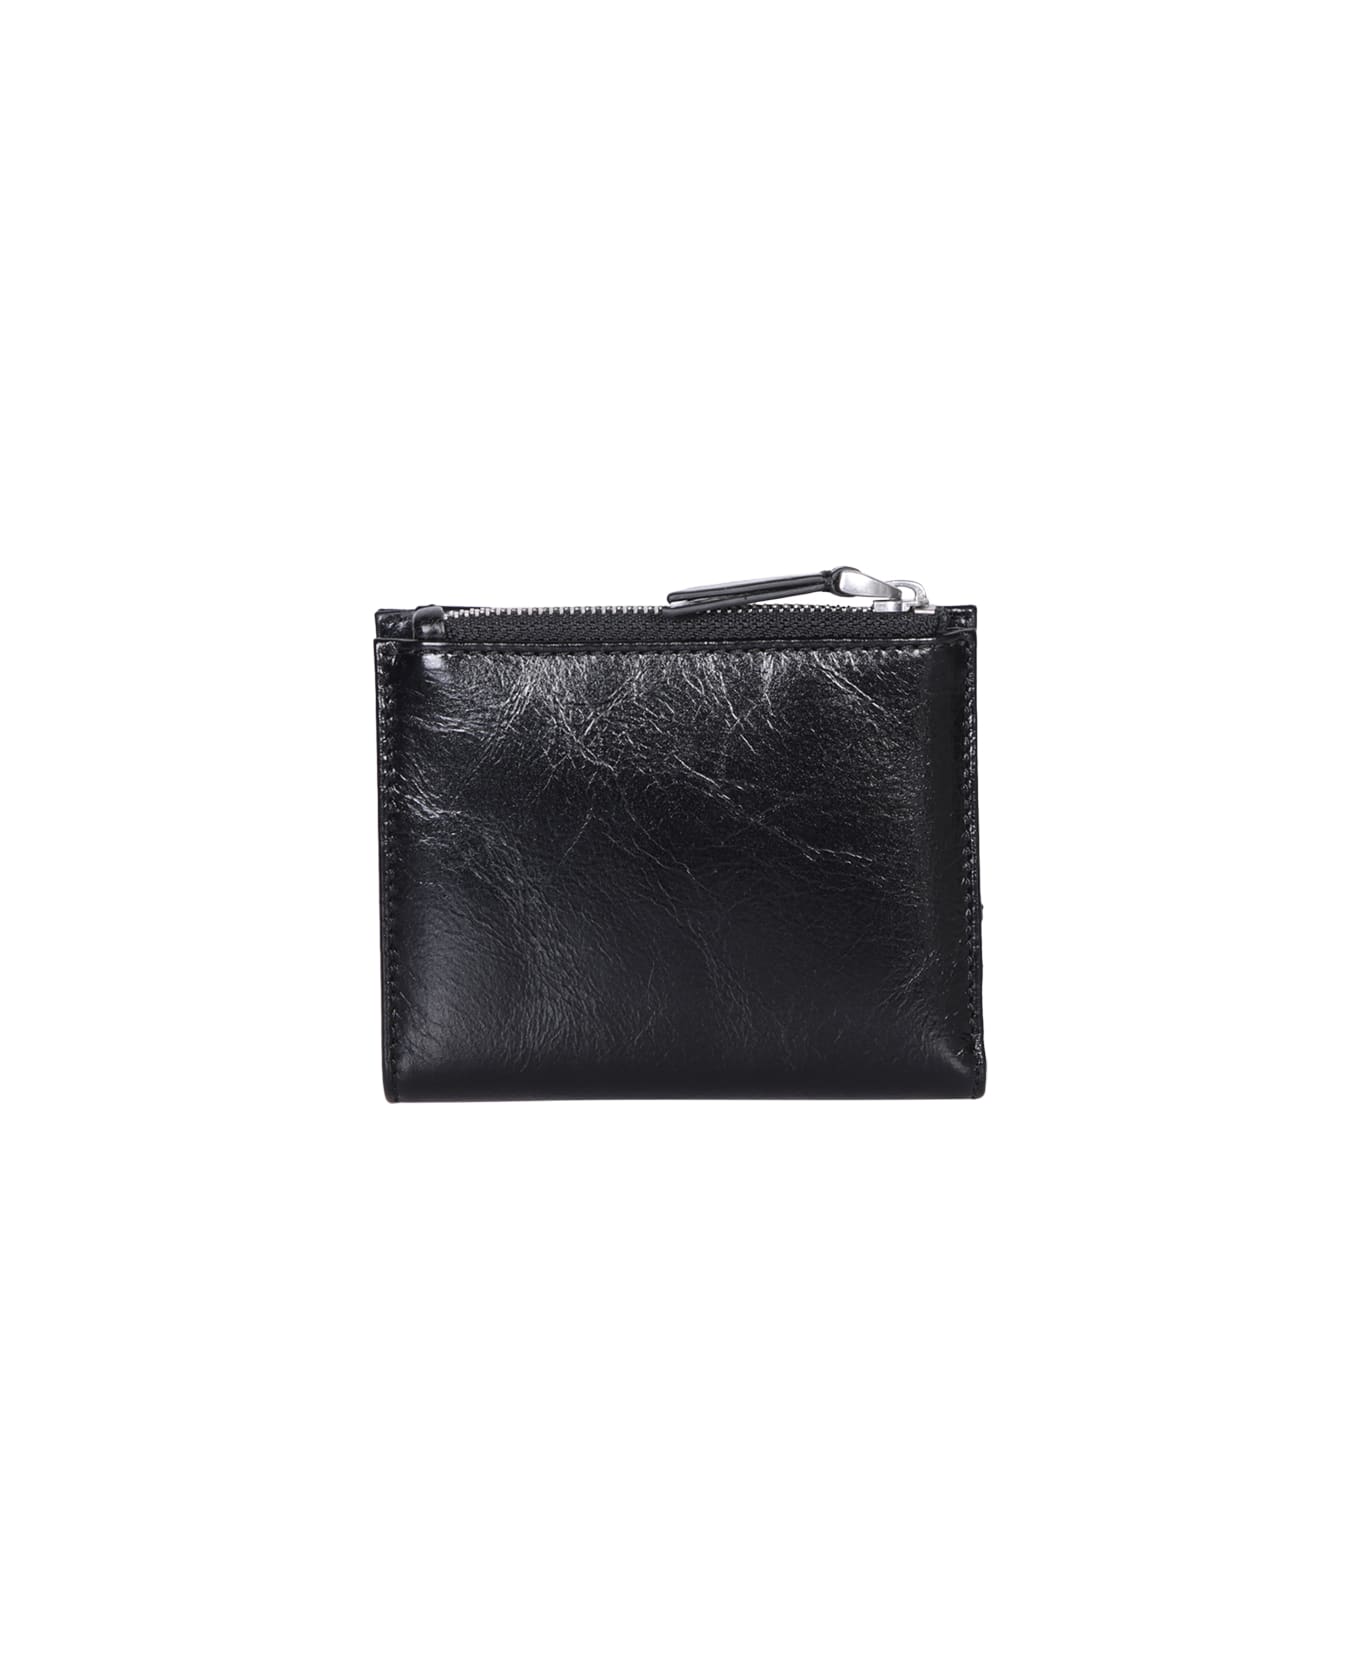 Ami Alexandre Mattiussi Ami Paris Voulez Black Leather Wallet - Black